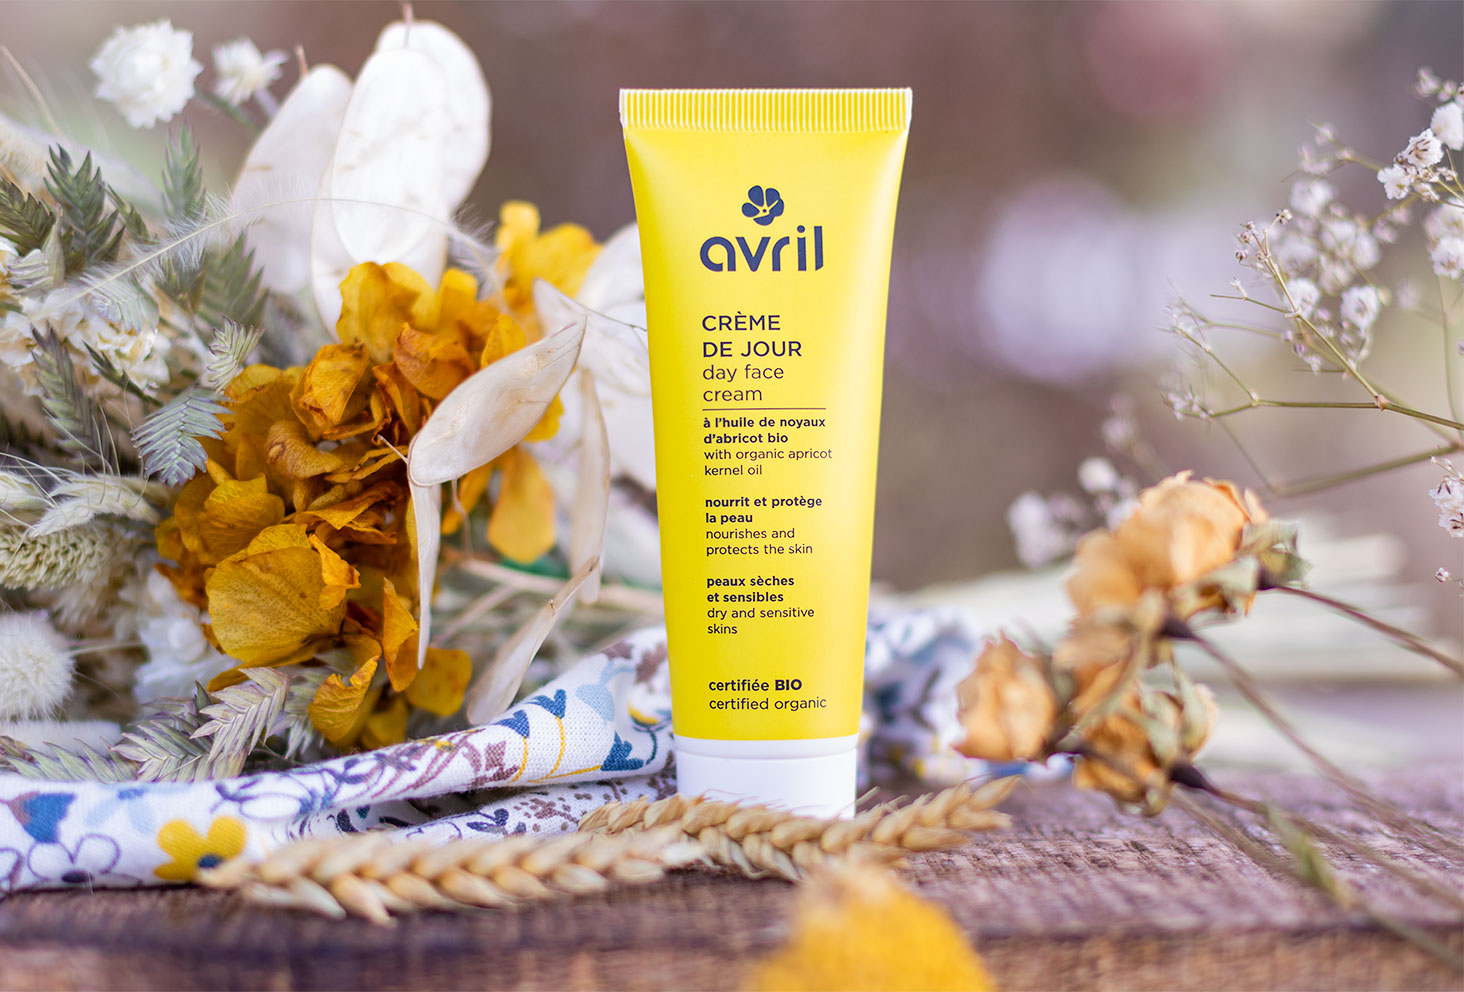 La crème de jour au packaging jaune de la marque Avril, debout sur une planche en bois à côté d'un bouquet de fleurs séchées jaunes et blanches